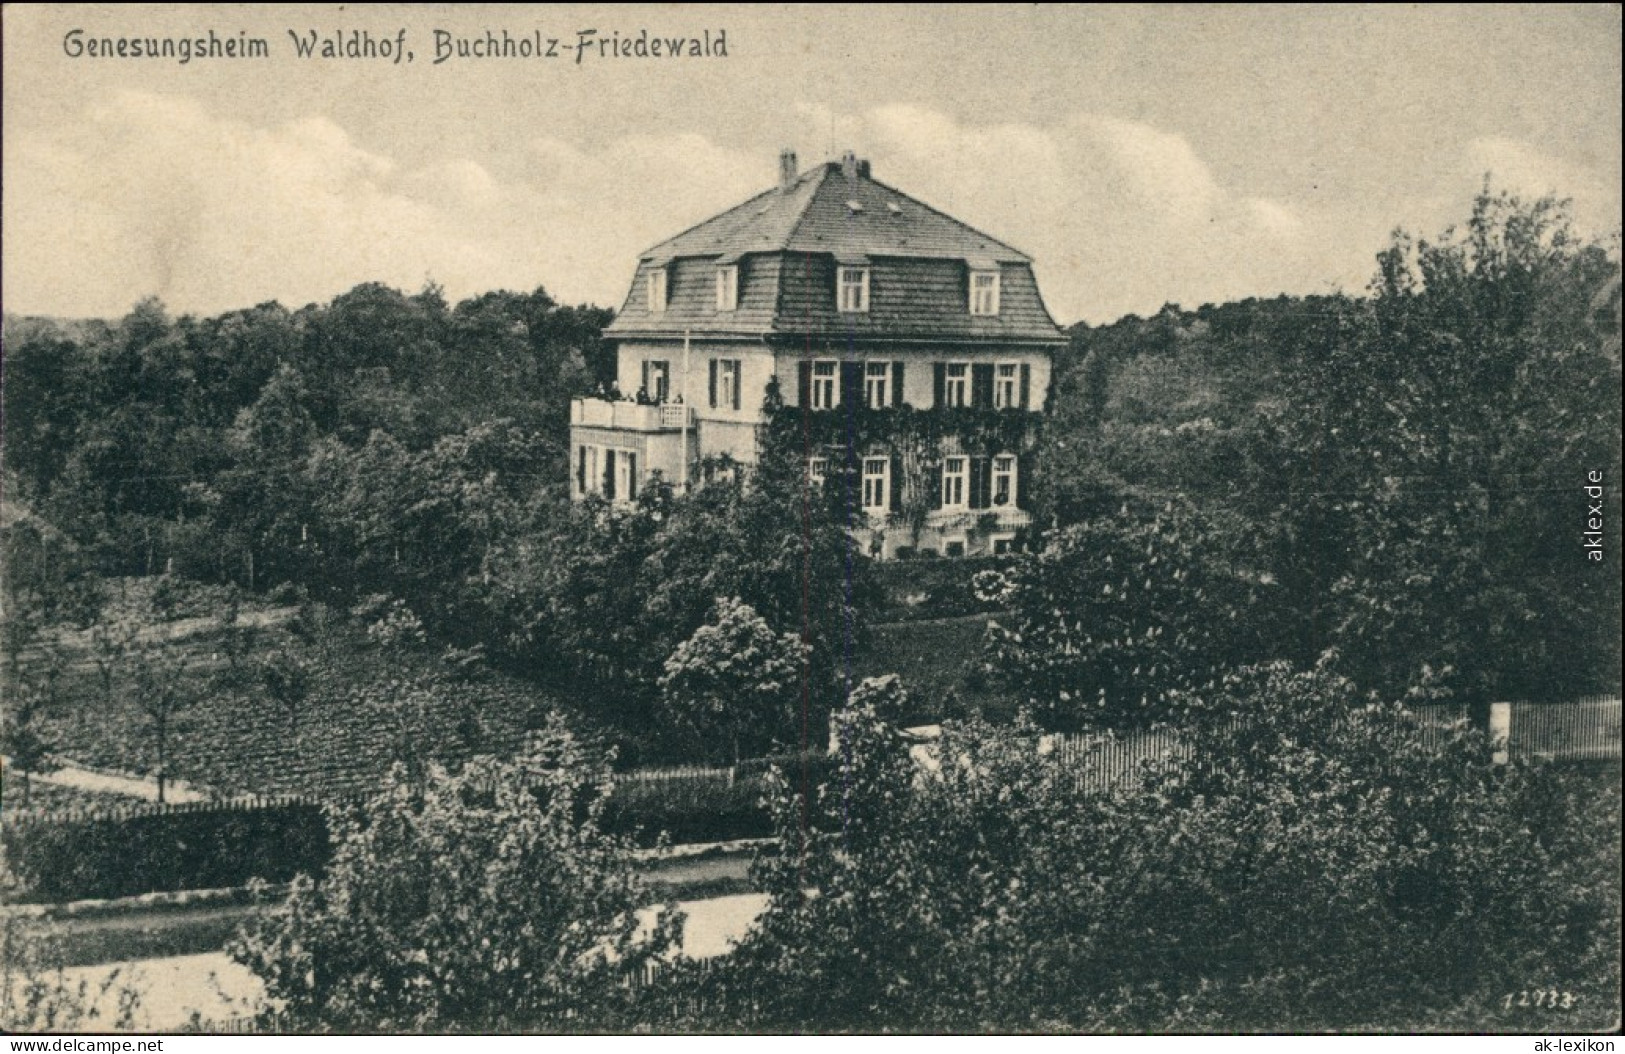 Ansichtskarte Buchholz-Moritzburg Genesungsheim Walddorf Friedewald 1918  - Moritzburg